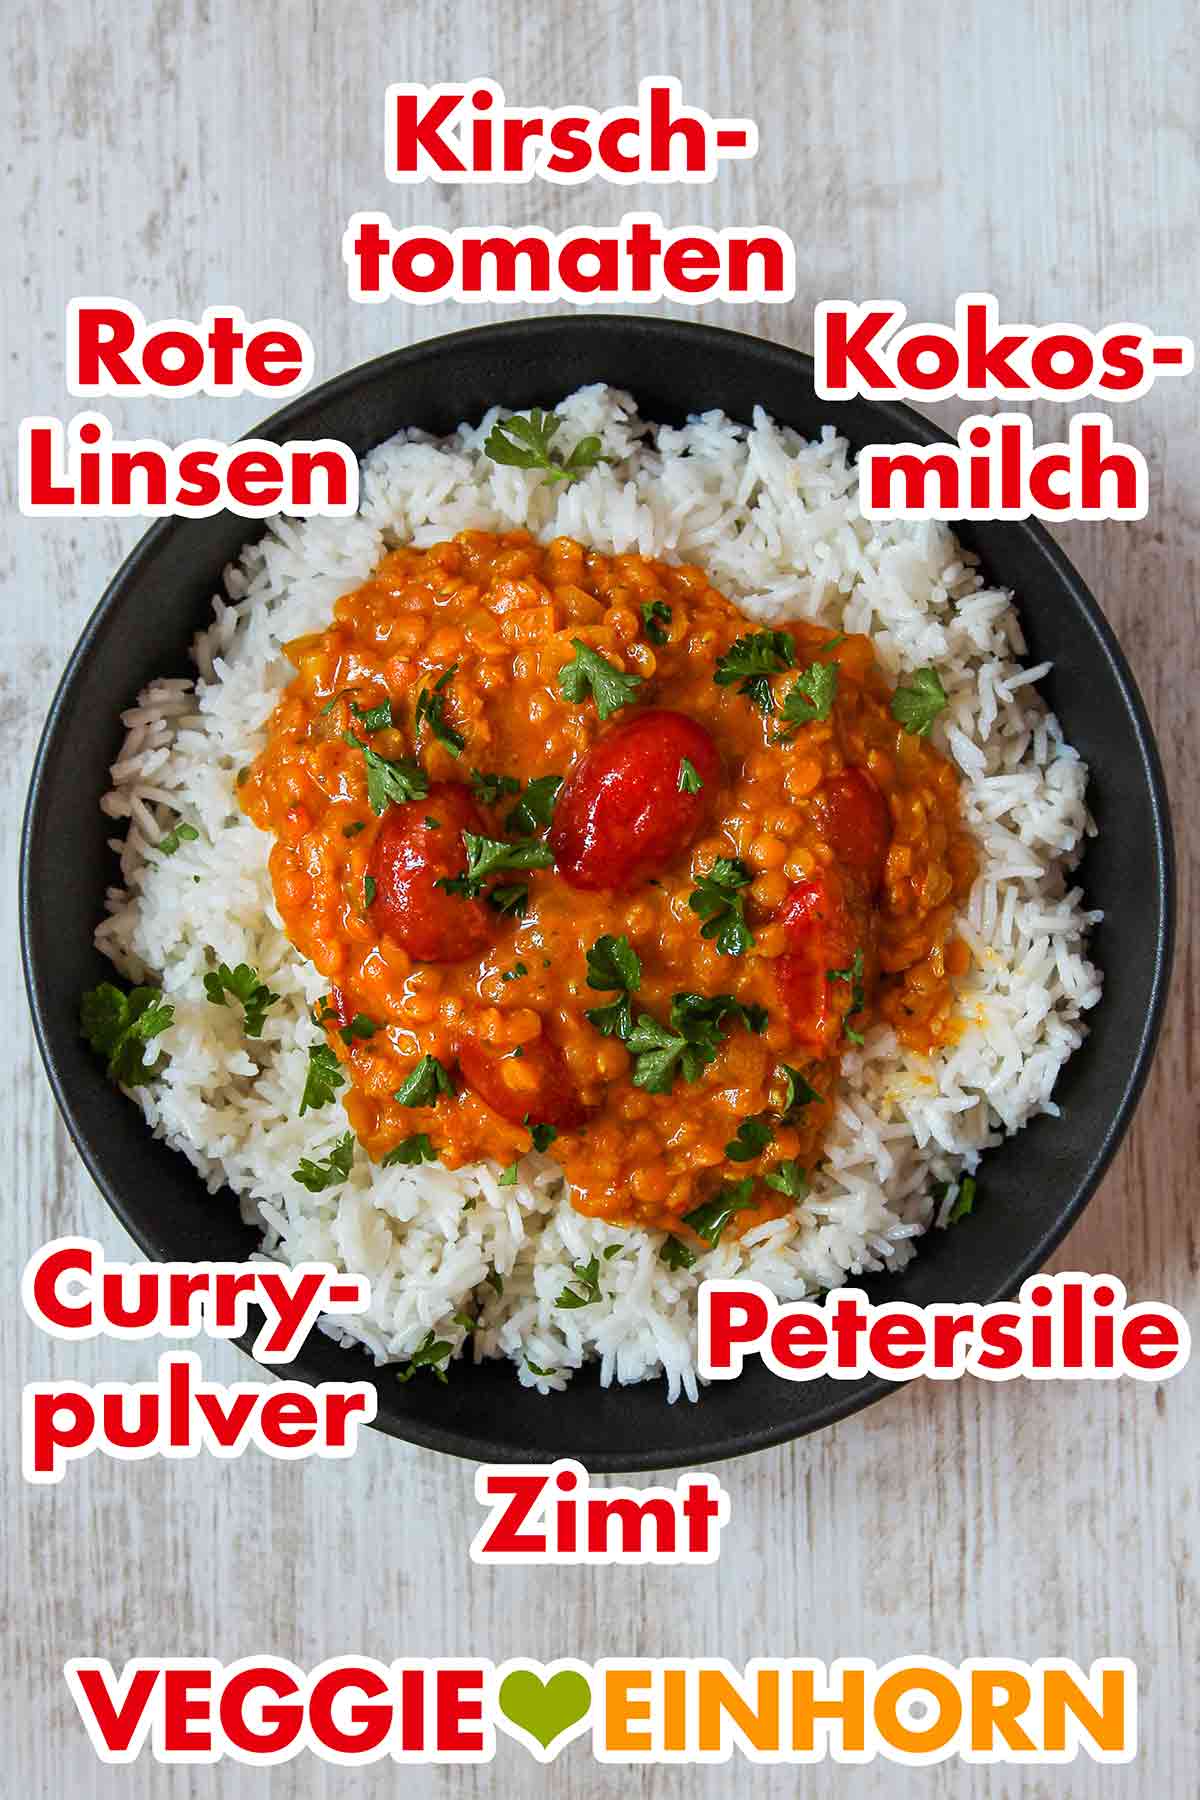 Curry mit roten Linsen, Kirschtomaten und Kokosmilch